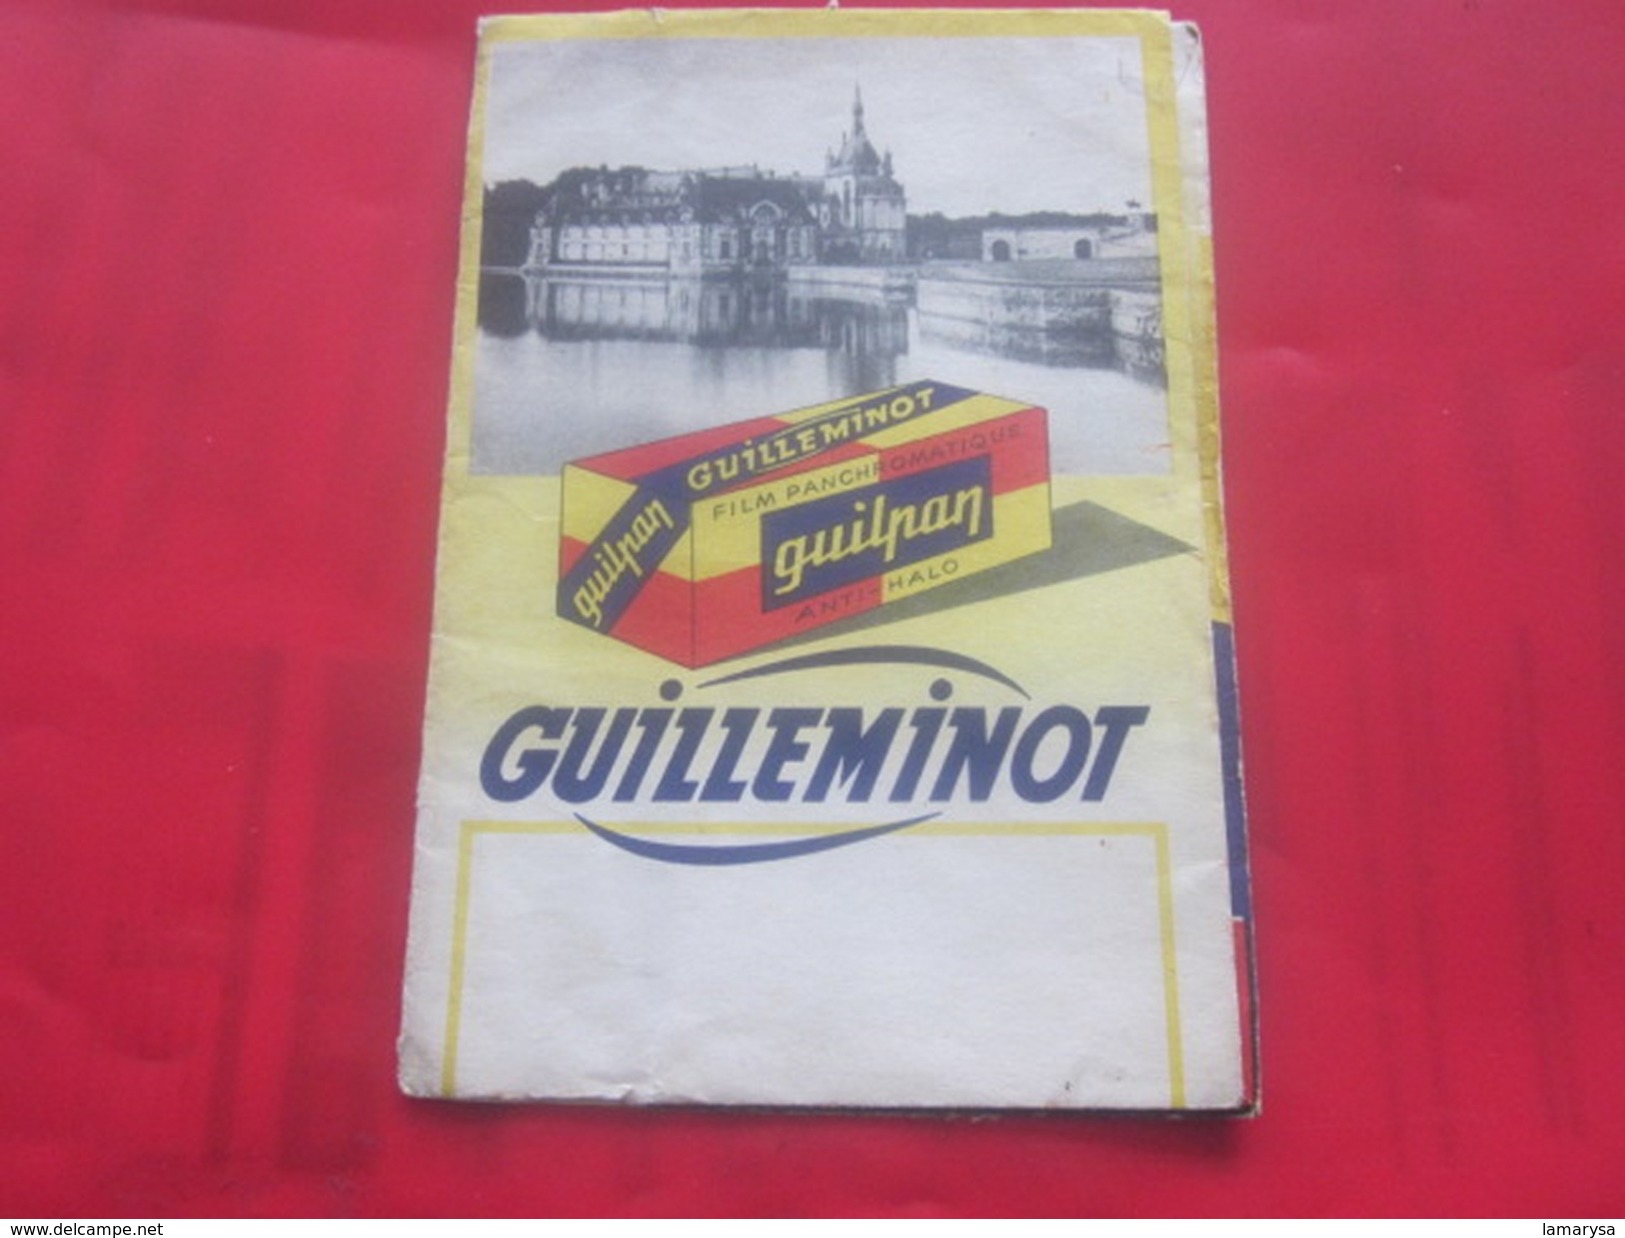 Ancienne Pochette Photographique GUILLEMINOT GUILPAN  -   Photo-Négatif-Pellicule Photographie  Accessoire - Matériel & Accessoires